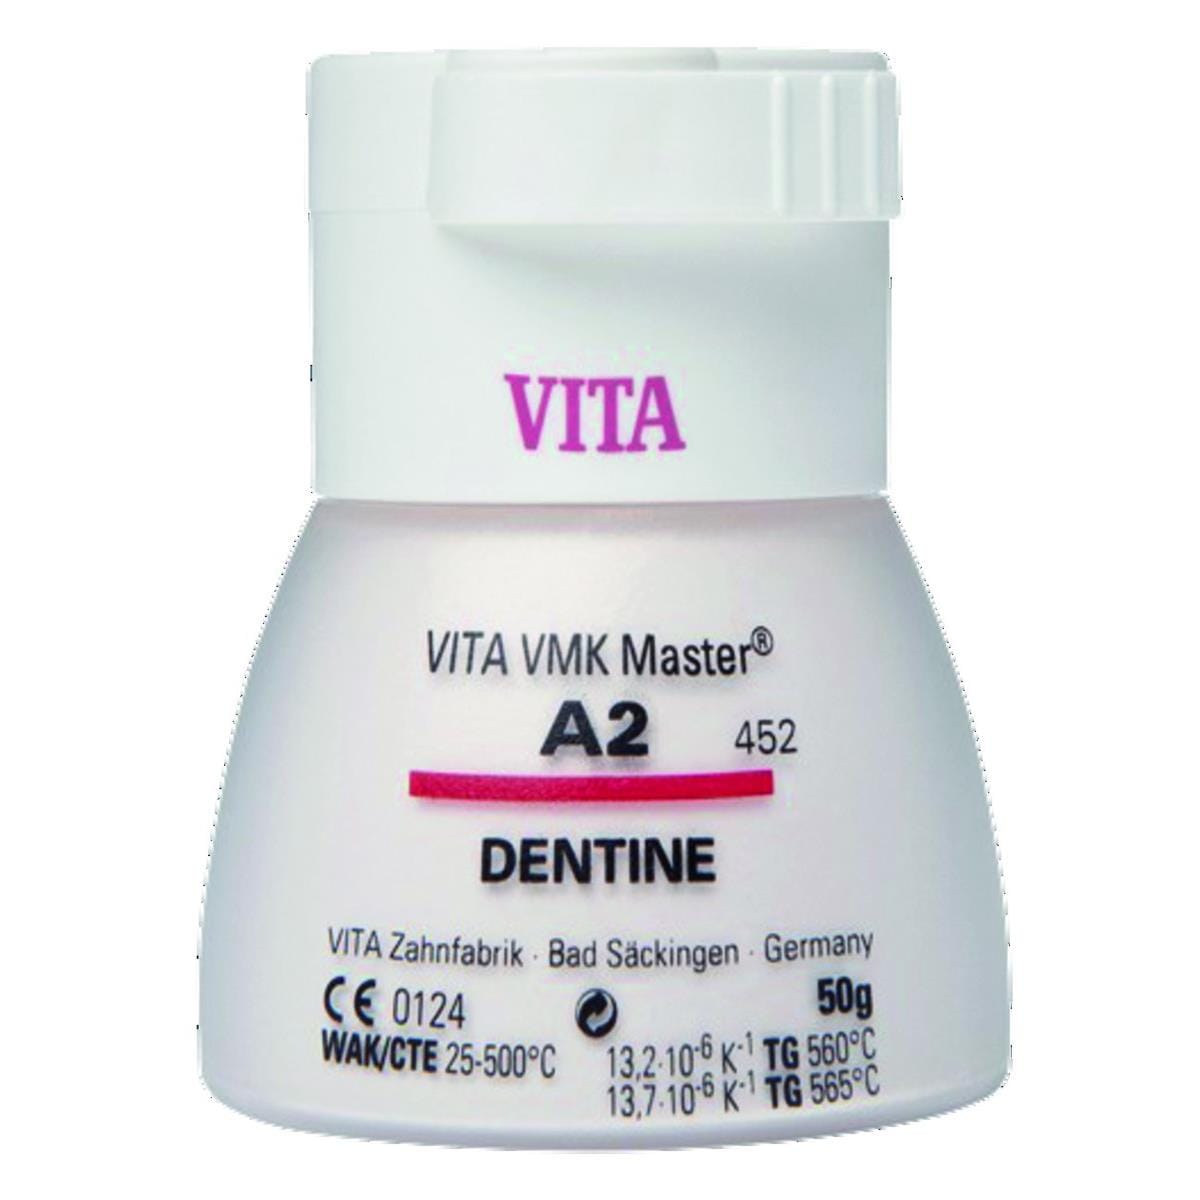 VMK Master VITA - Dentine - 2M1 - Le flacon de 50 g